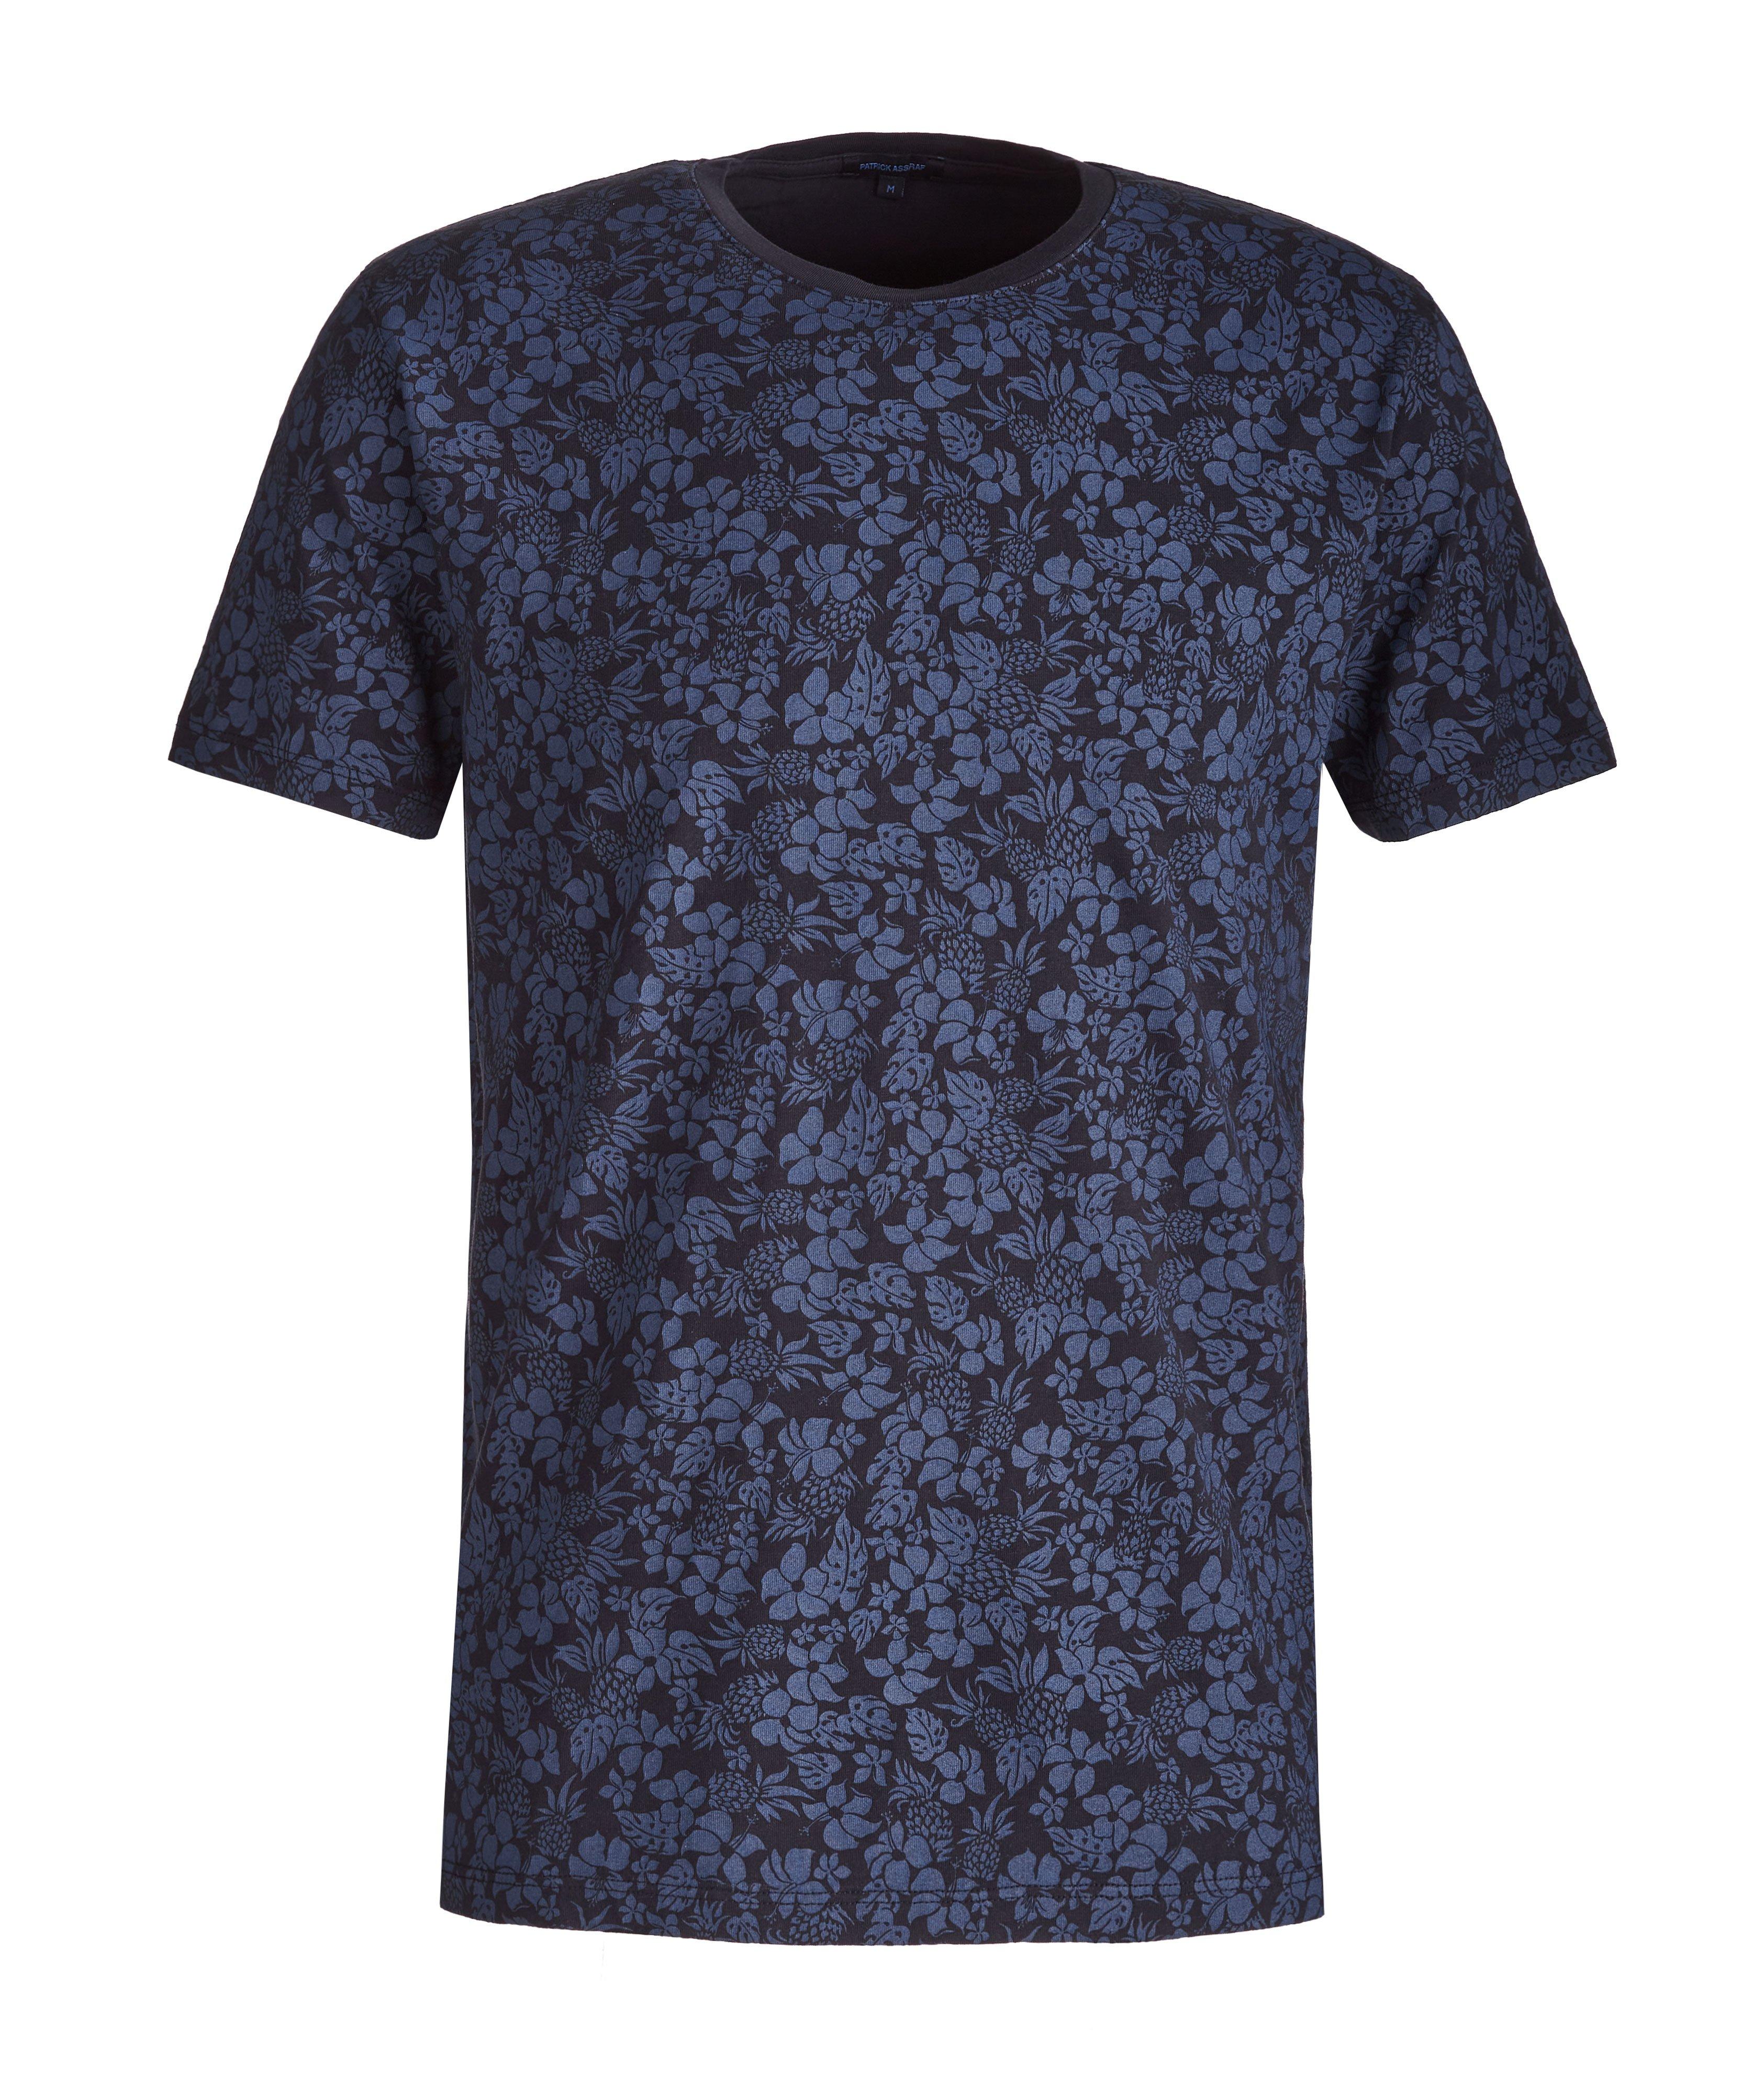 T-shirt en coton pima extensible à motif image 0